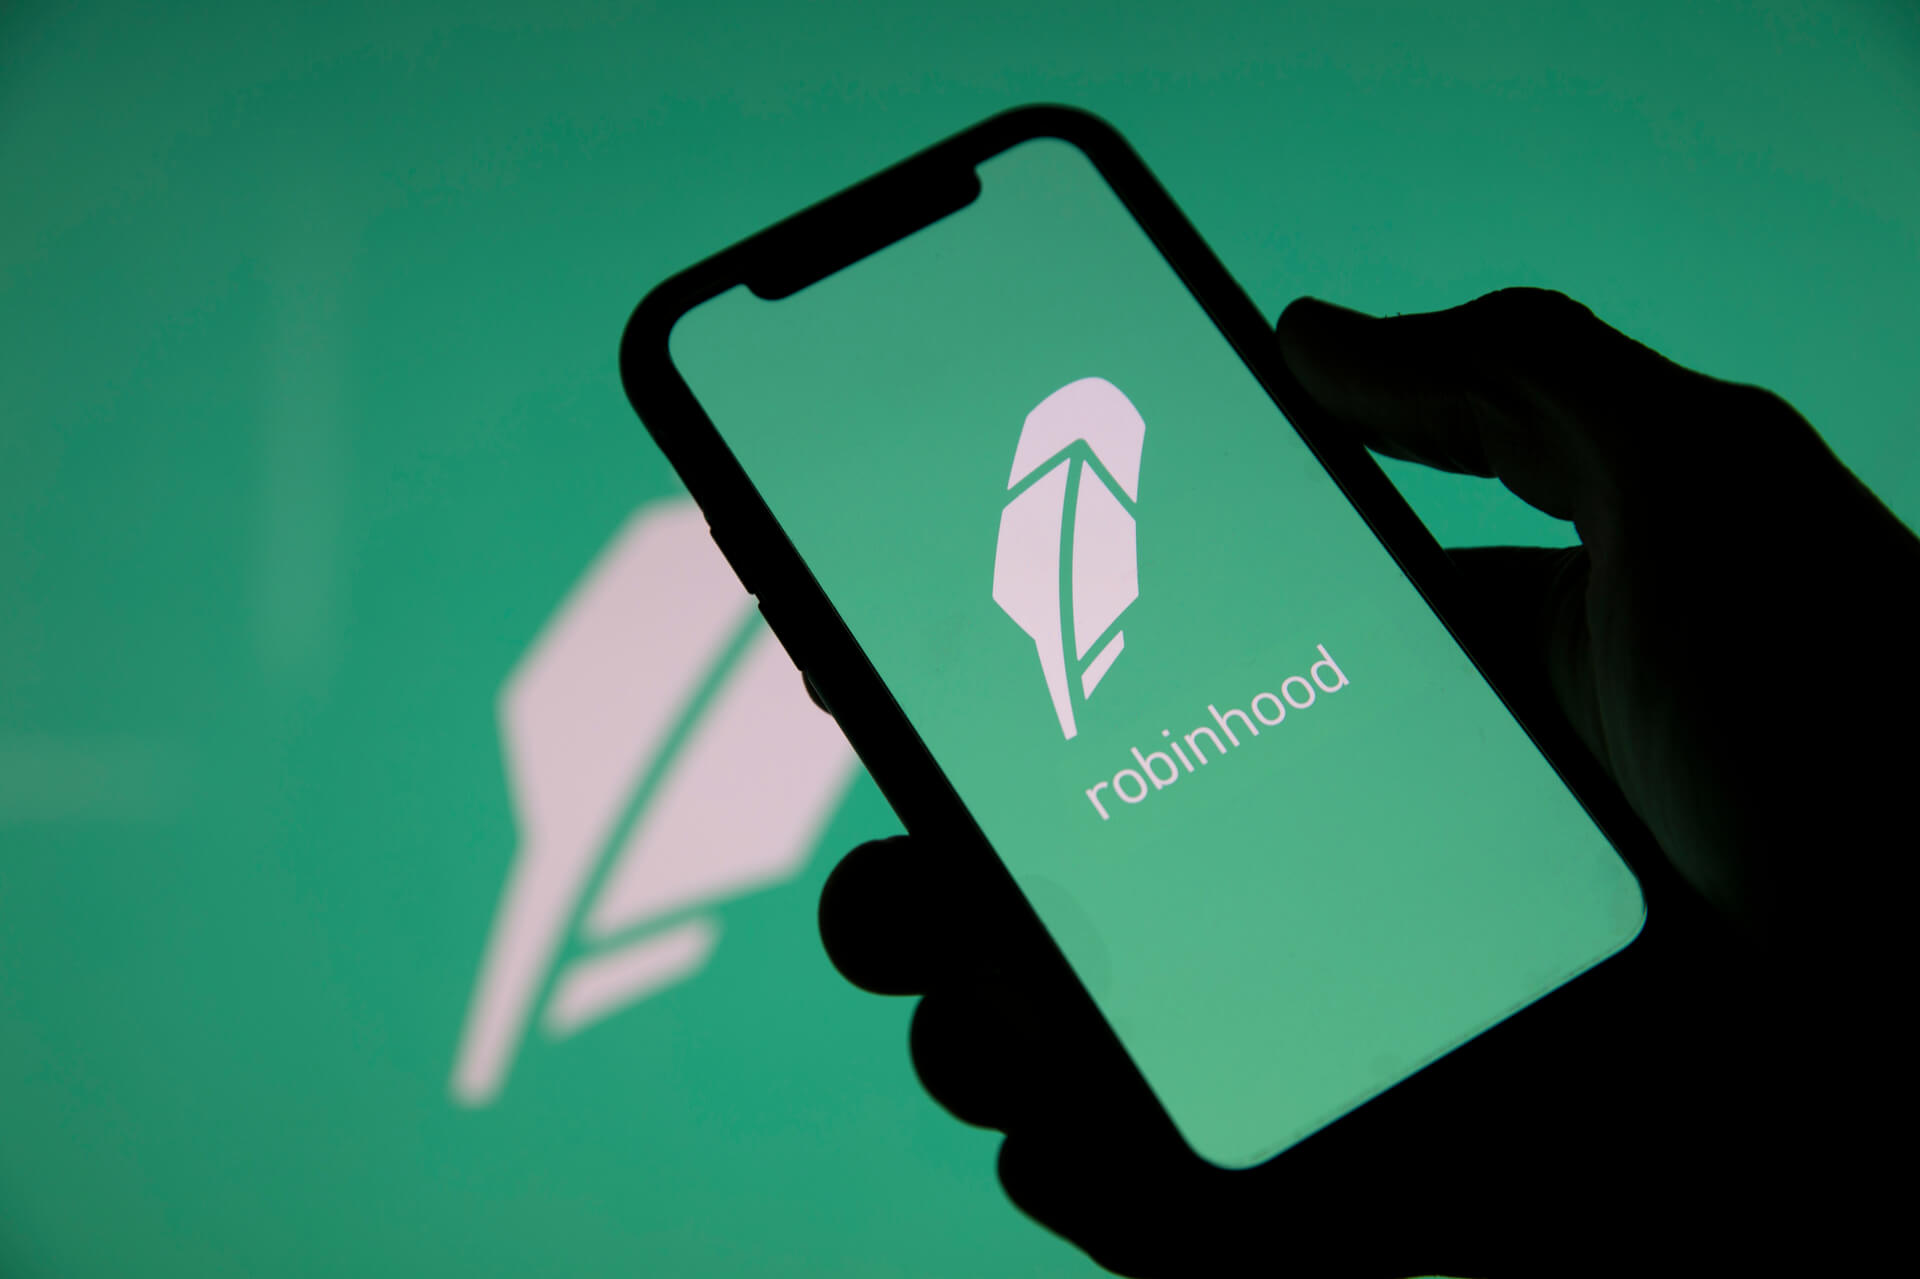 RobinHood aplicación para invertir